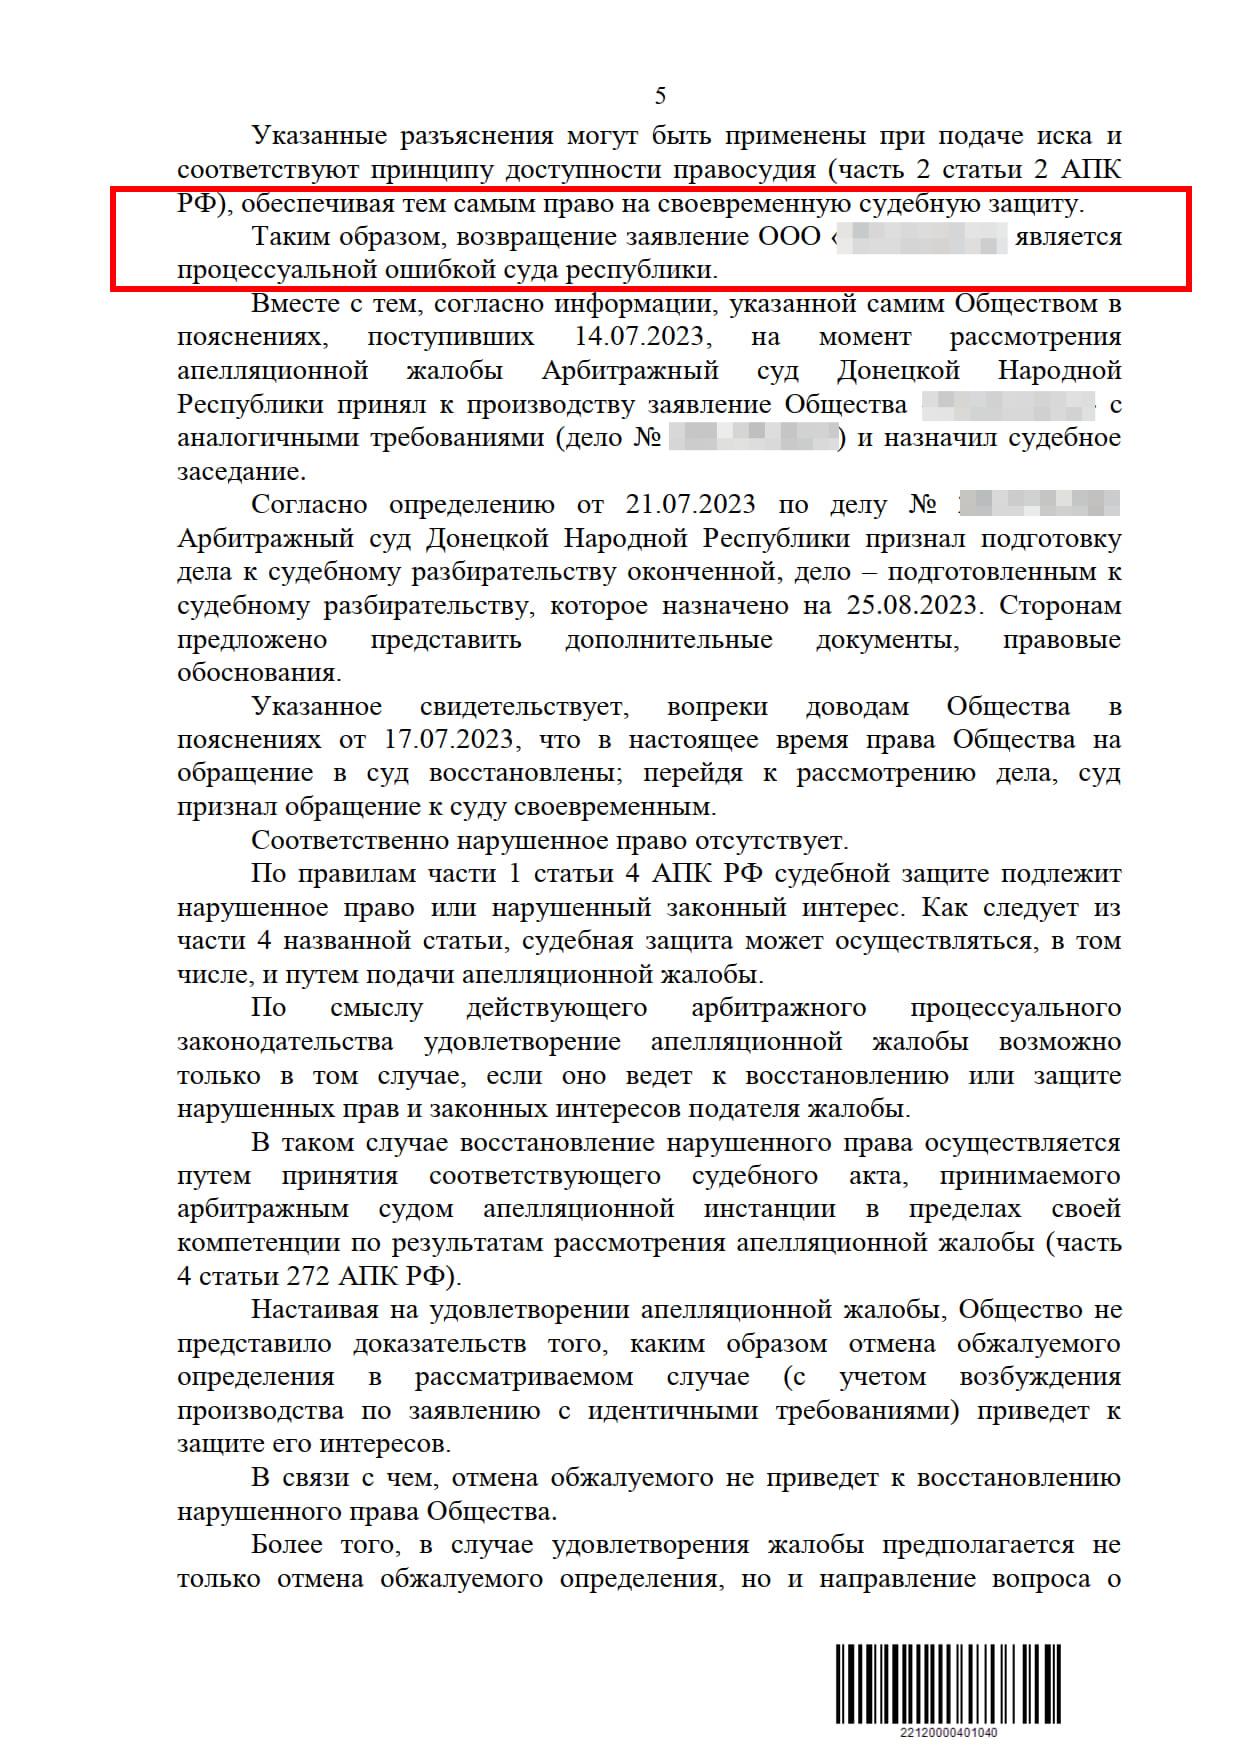 Спор юристов Донецка с Арбитражным судом ДНР о необходимости предоставления приказа о назначении директора